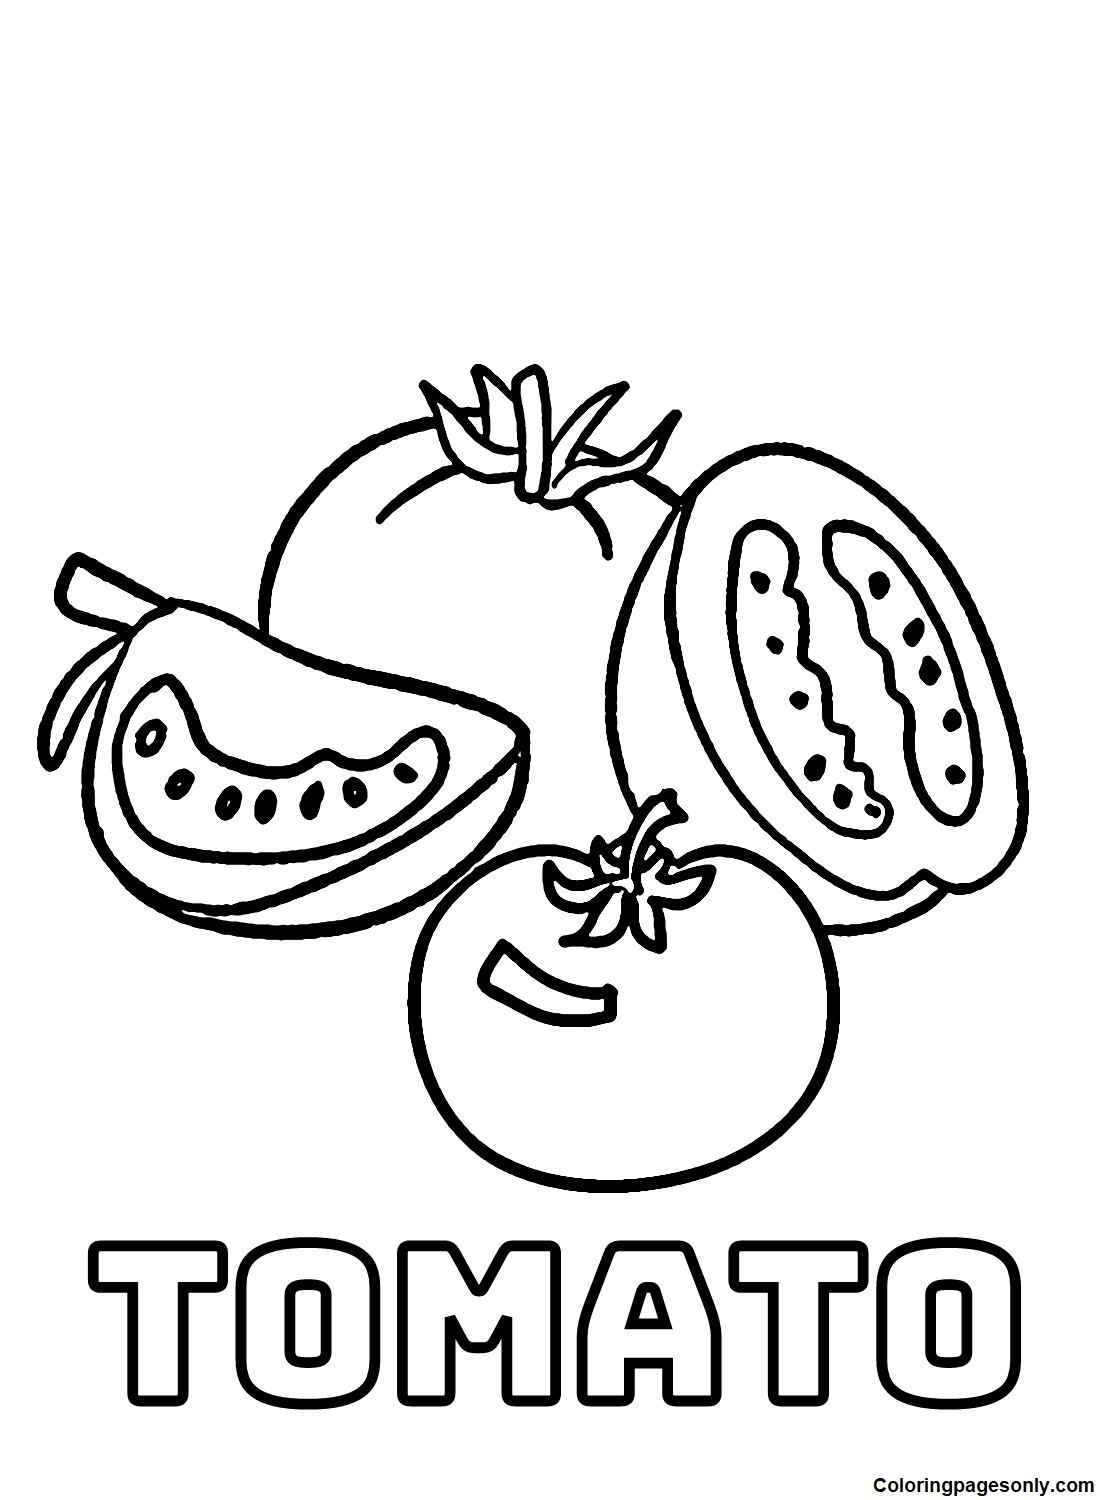 Tomates sem tomate